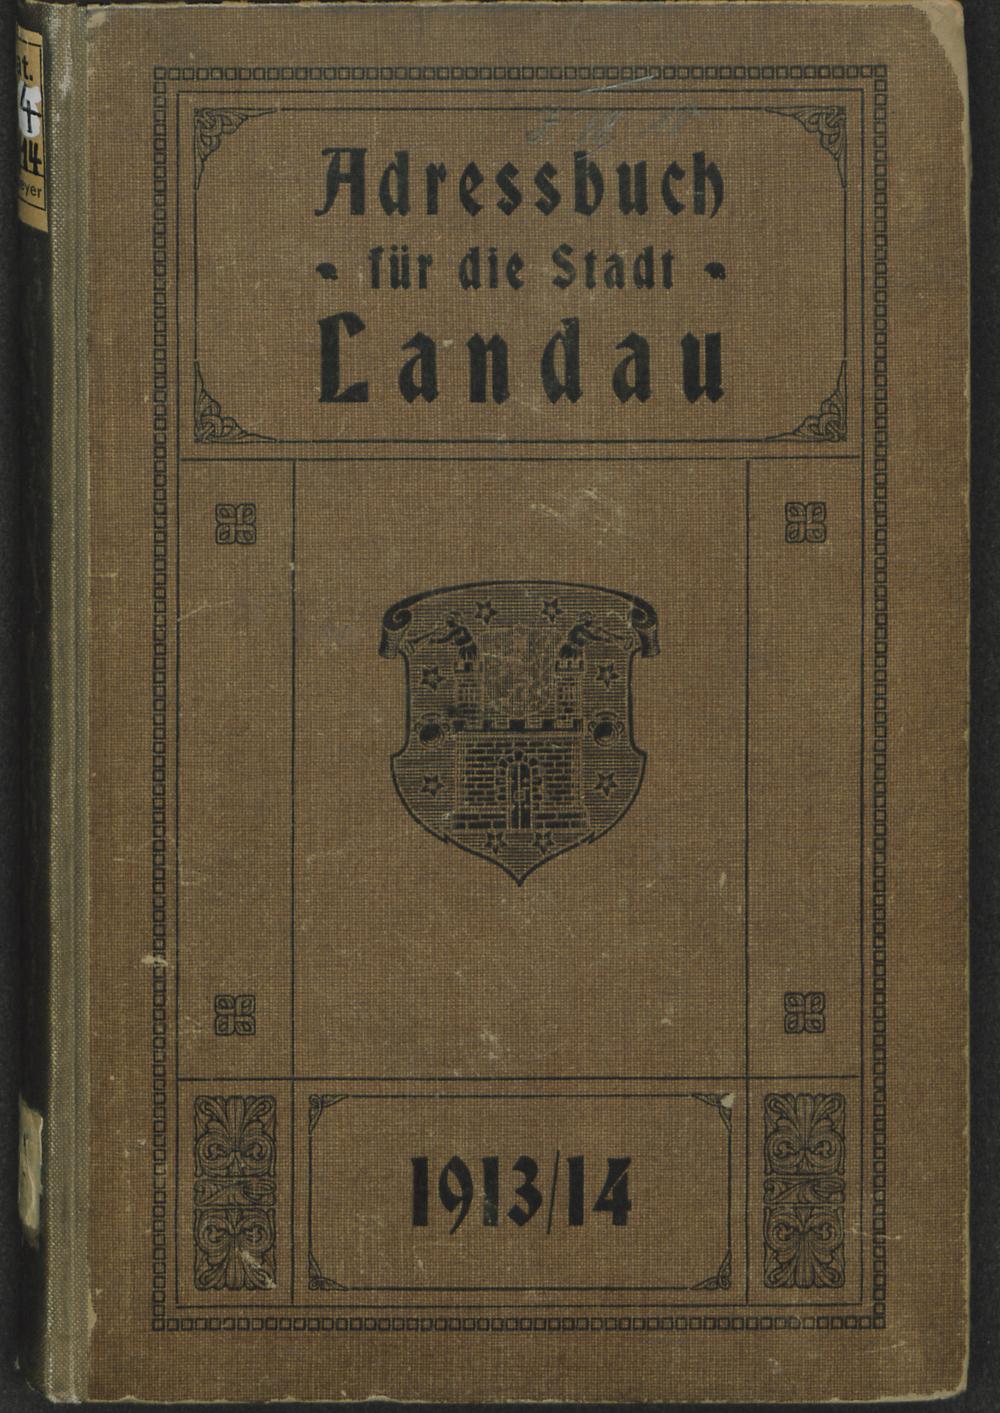 Adressbuch für die Stadt Landau 1913/14